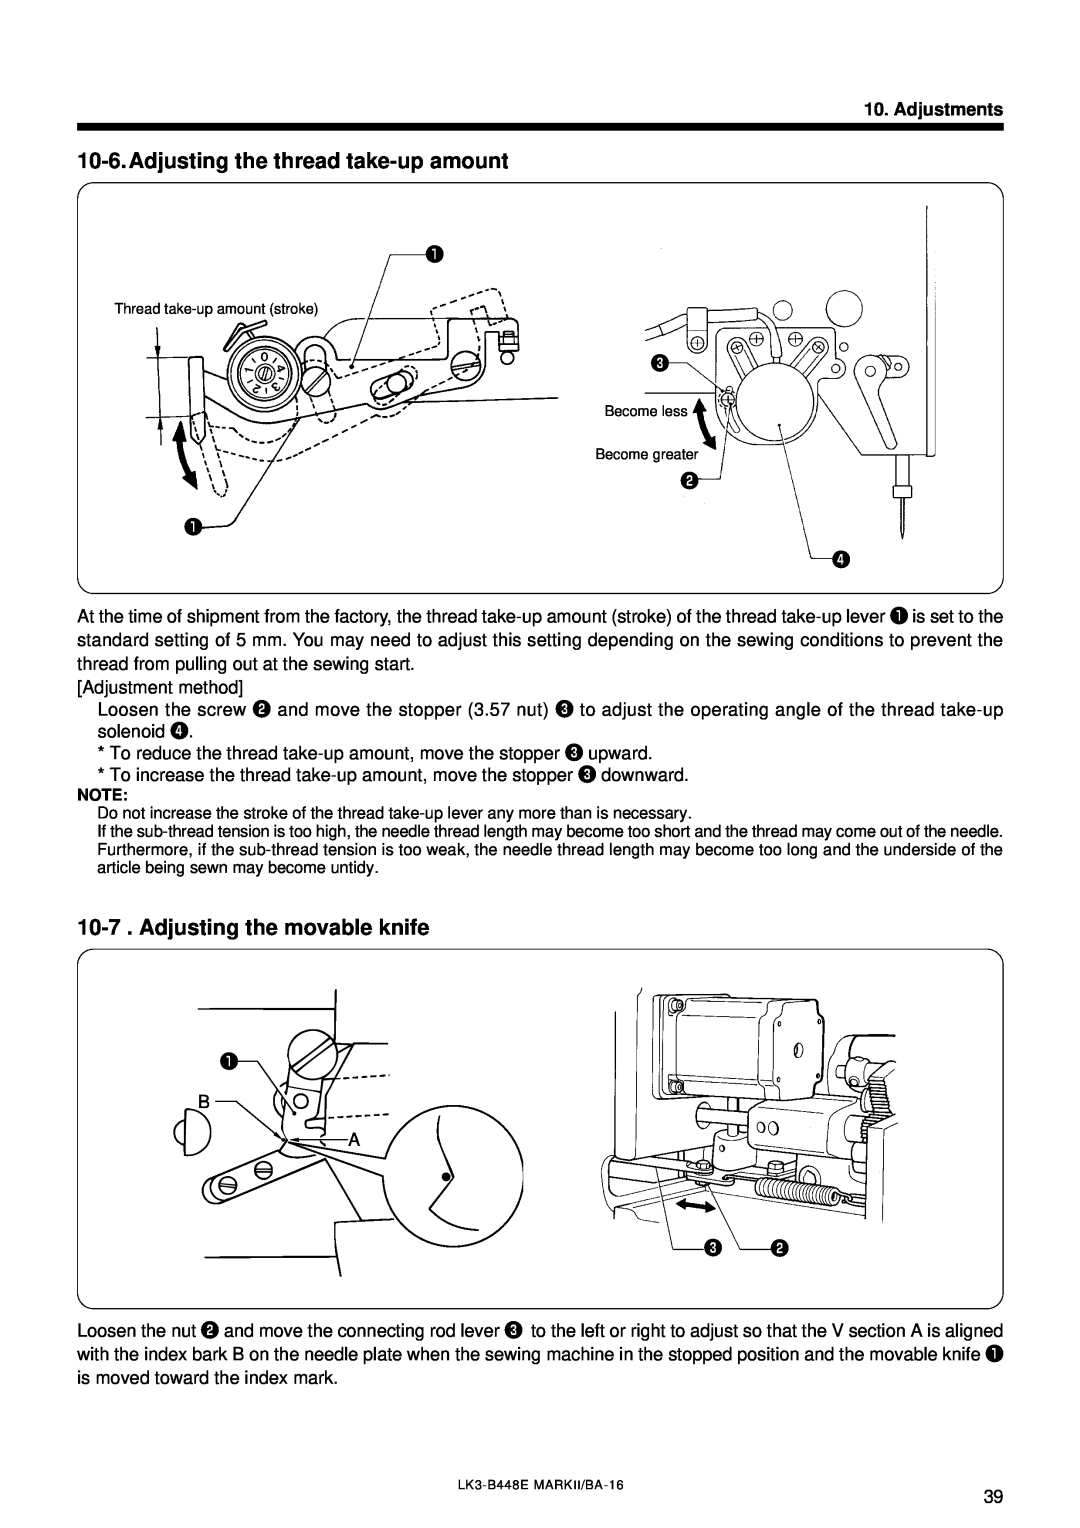 Brother LK3-B448E instruction manual Adjusting the thread take-up amount, Adjusting the movable knife, Adjustments 